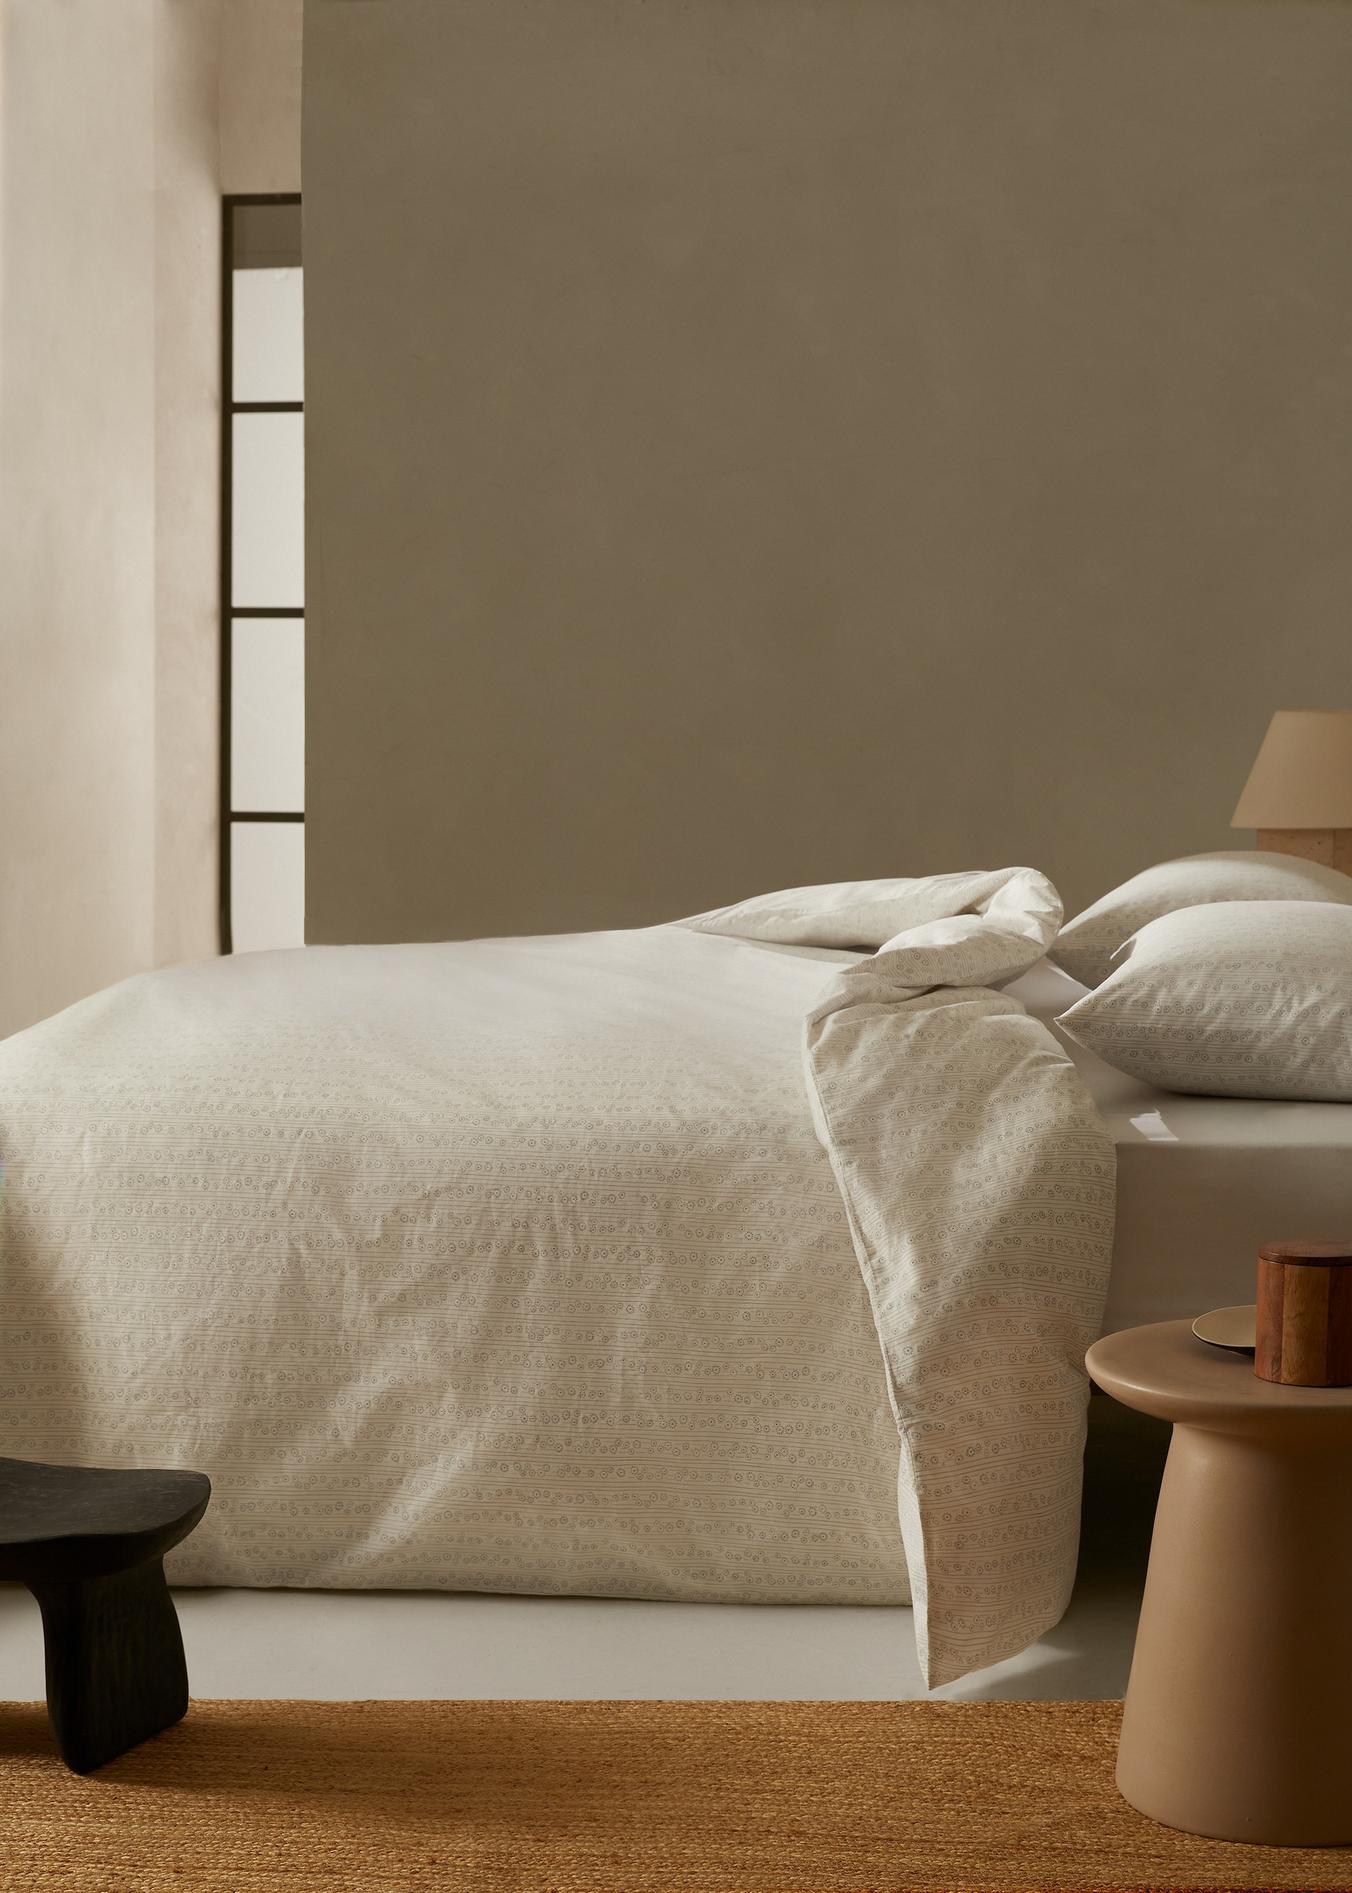 Bettbezug mit Blumenprint aus 100 % Baumwolle für 150 cm Bett für 35,99€ in Mango